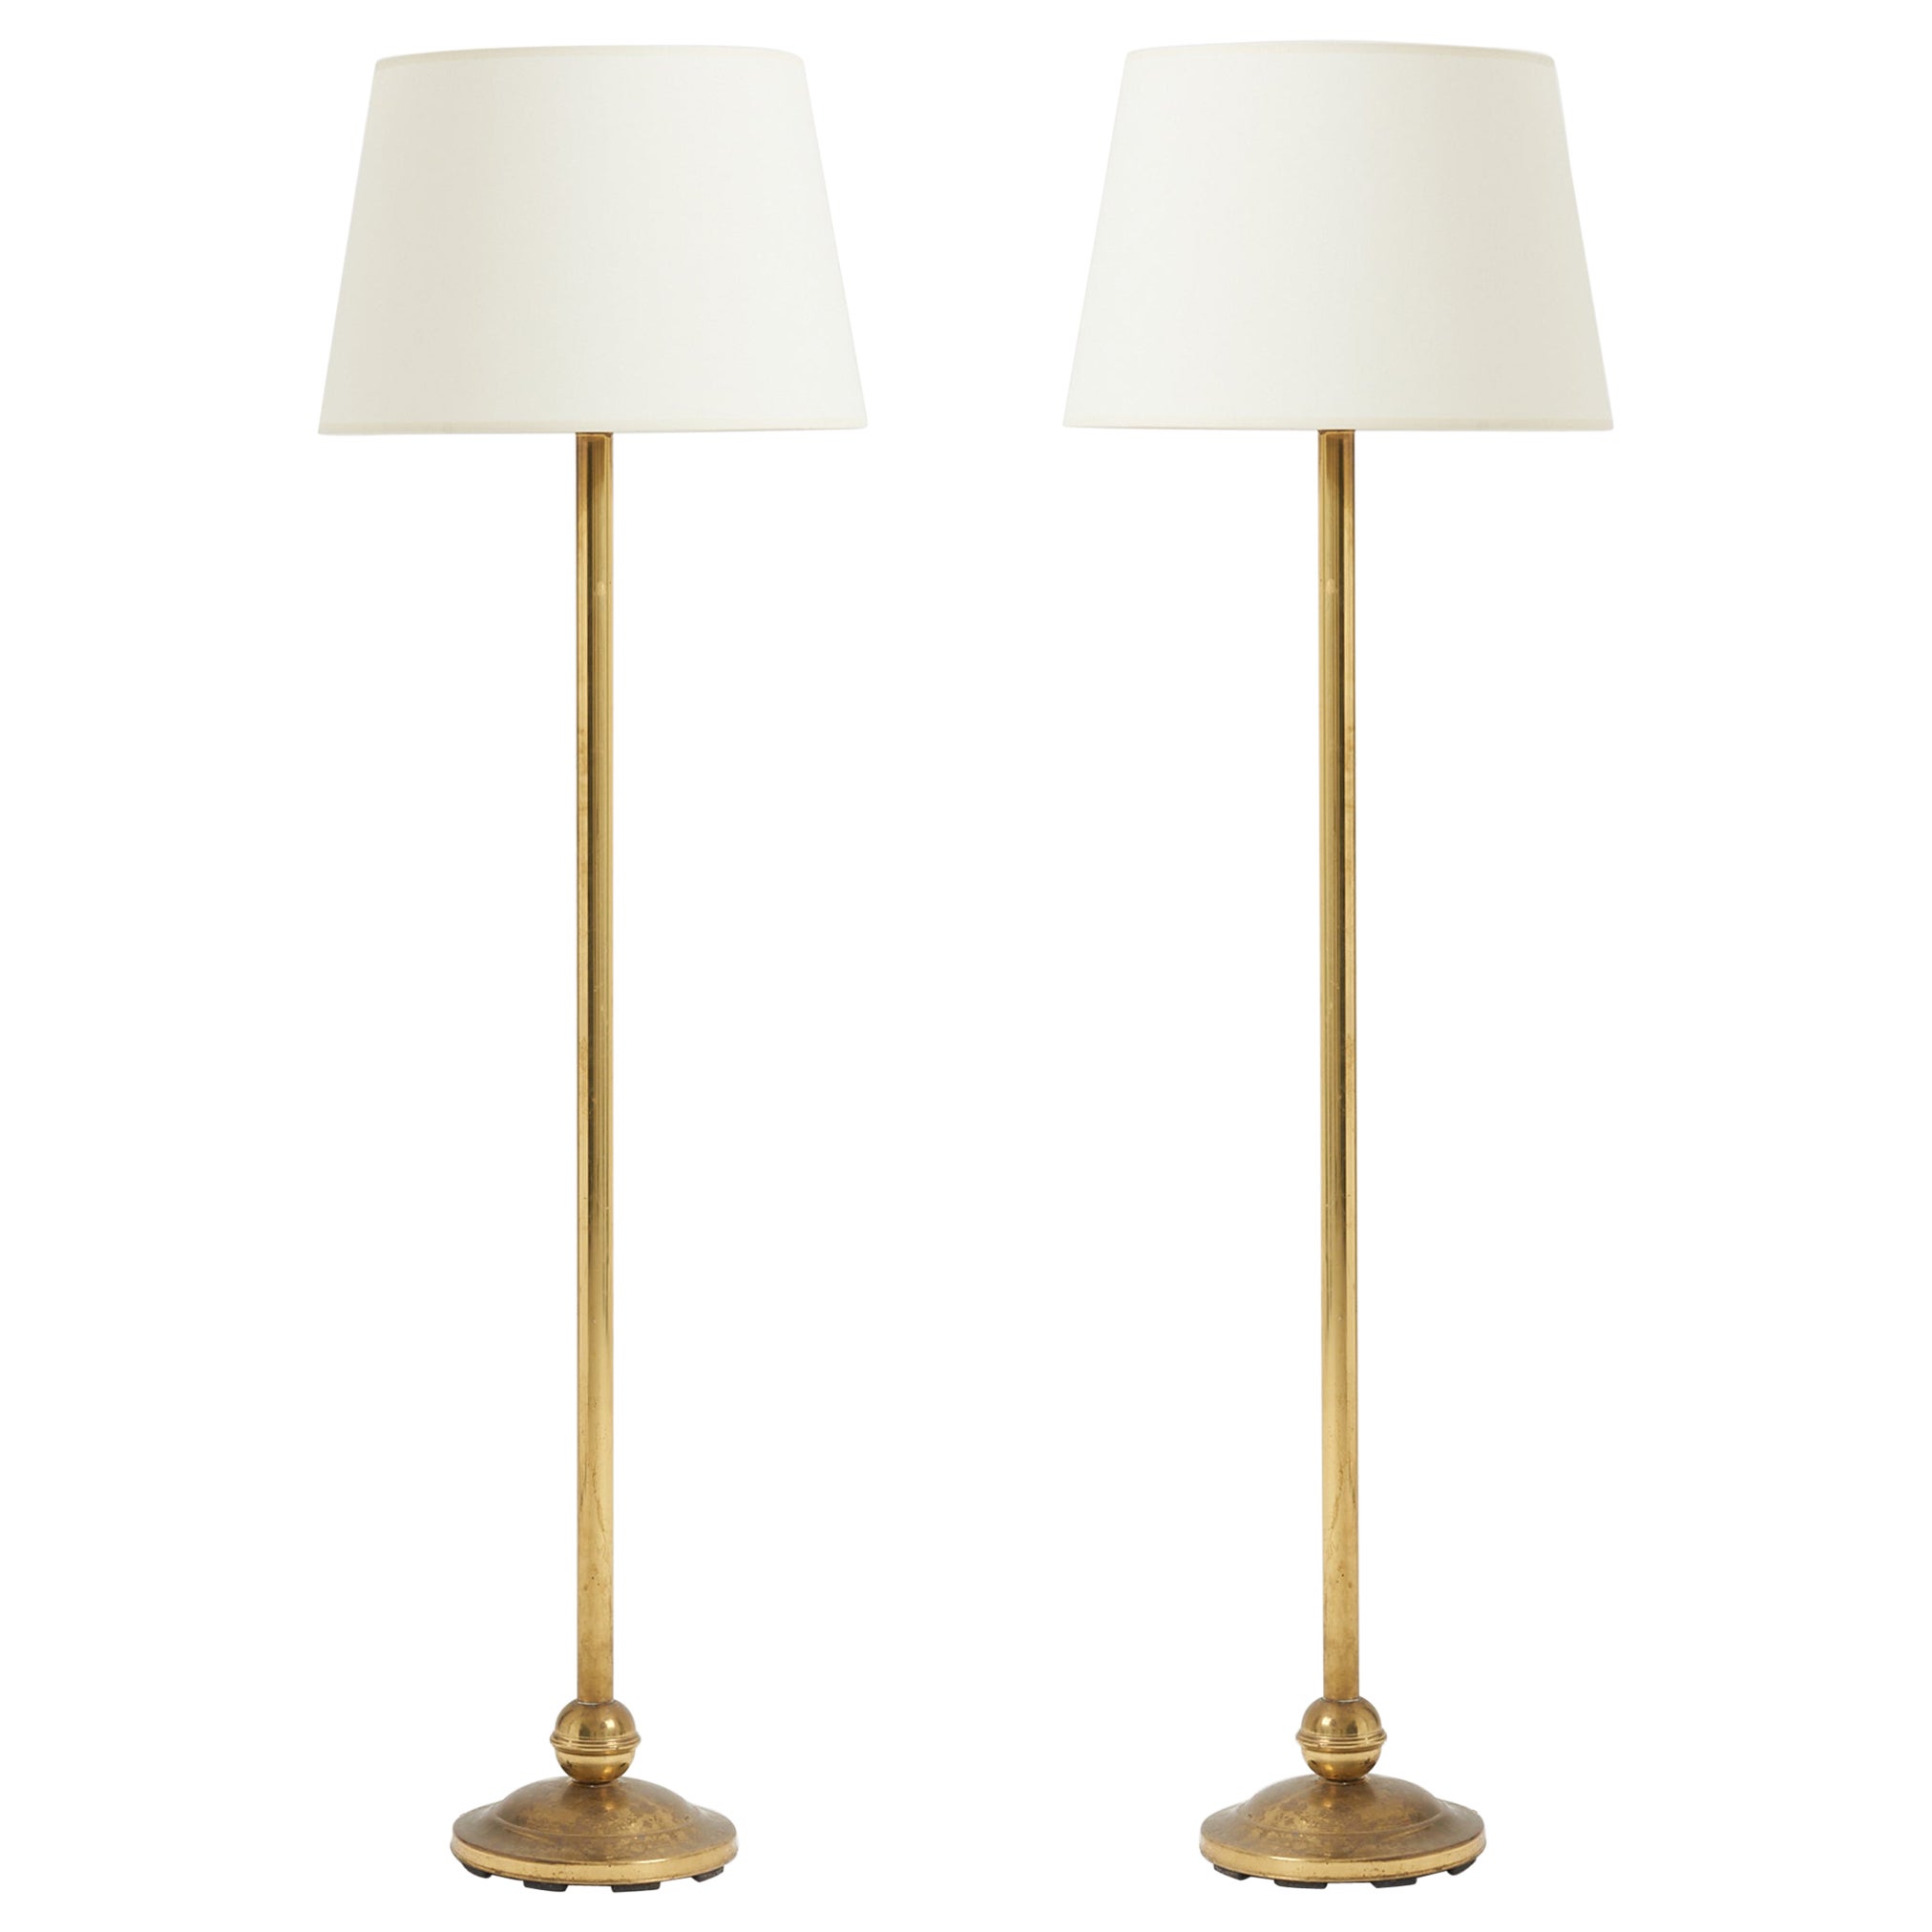 Pair of Midcentury Brass Floor Lamps